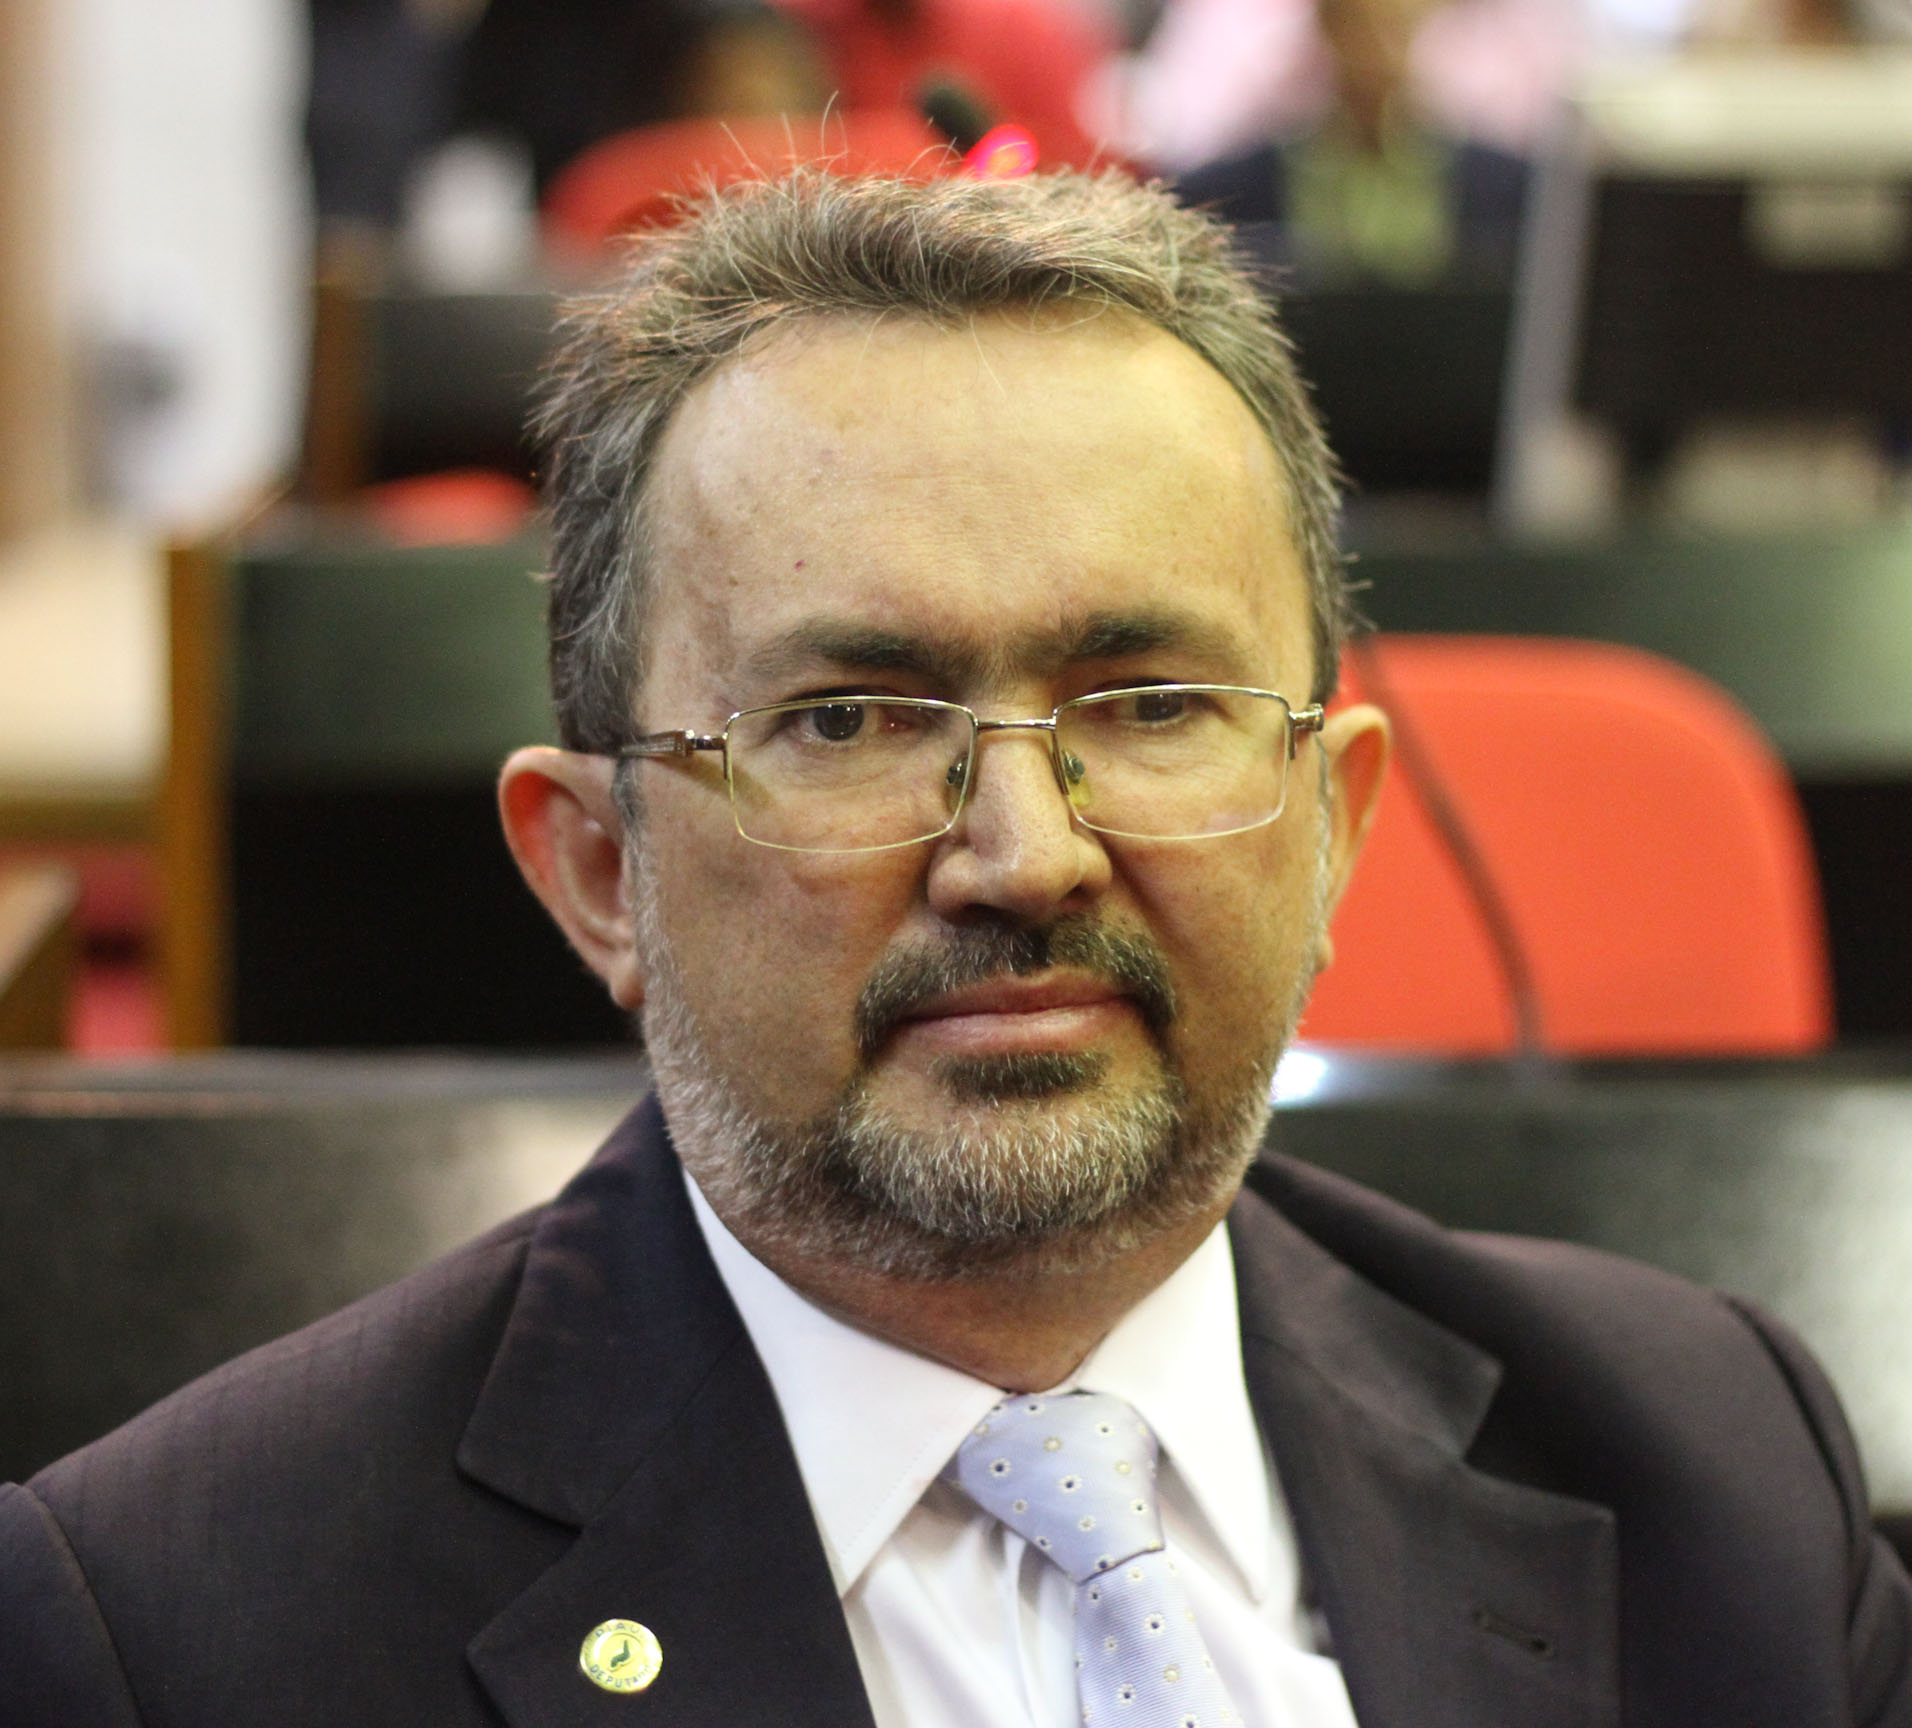 A solicitação da audiência foi do deputado estadual Antônio Félix (PSD).